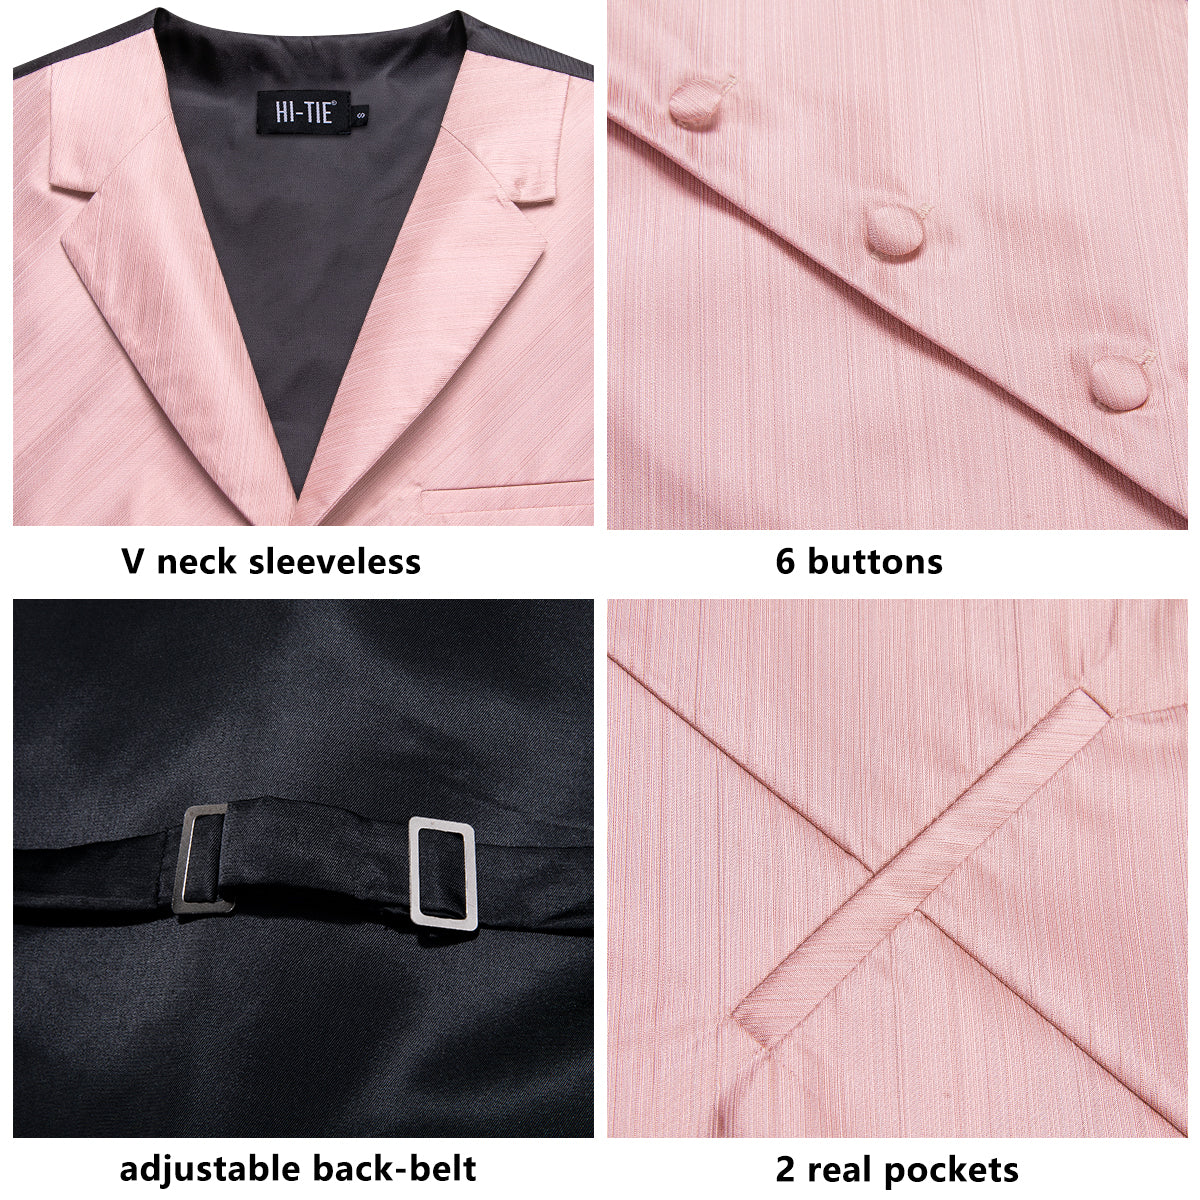 Baby Pink Solid Silk Men's Collar Vest Hanky Cufflinks Tie Set Waistcoat Suit Set